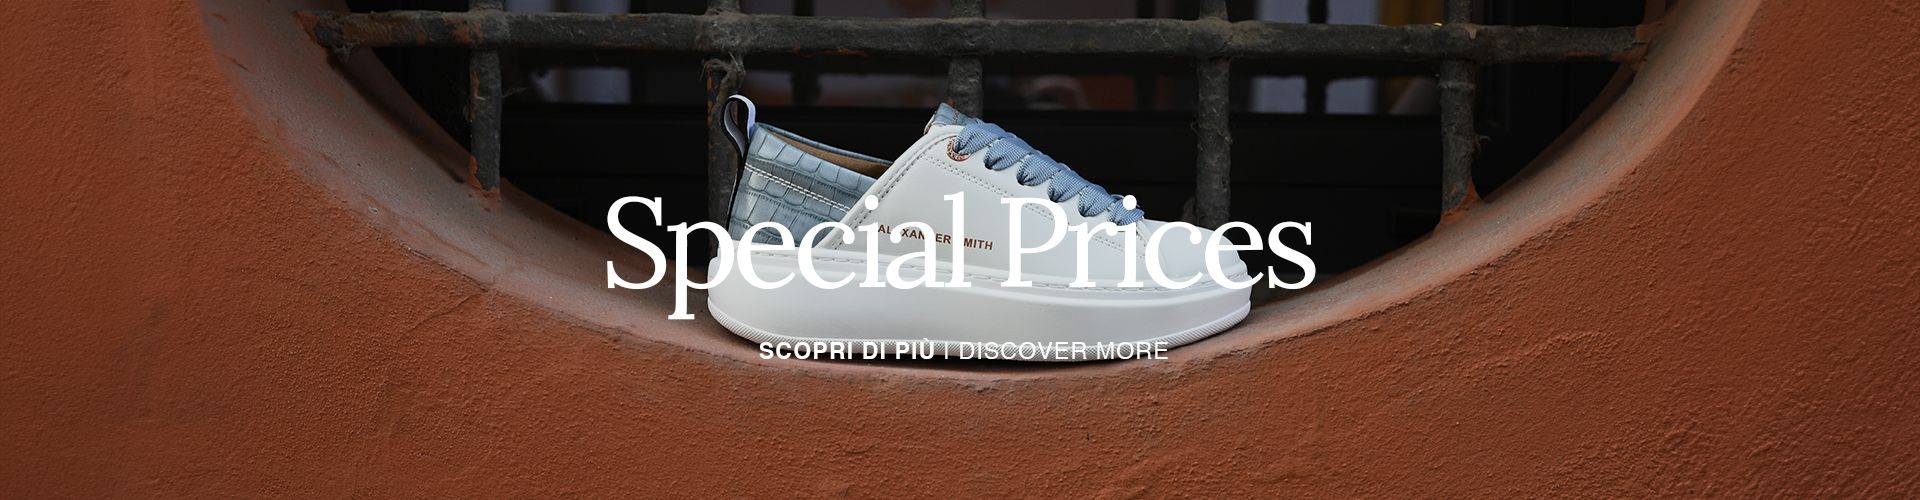 prezzi speciali - scarpe ed accessori uomo e donna